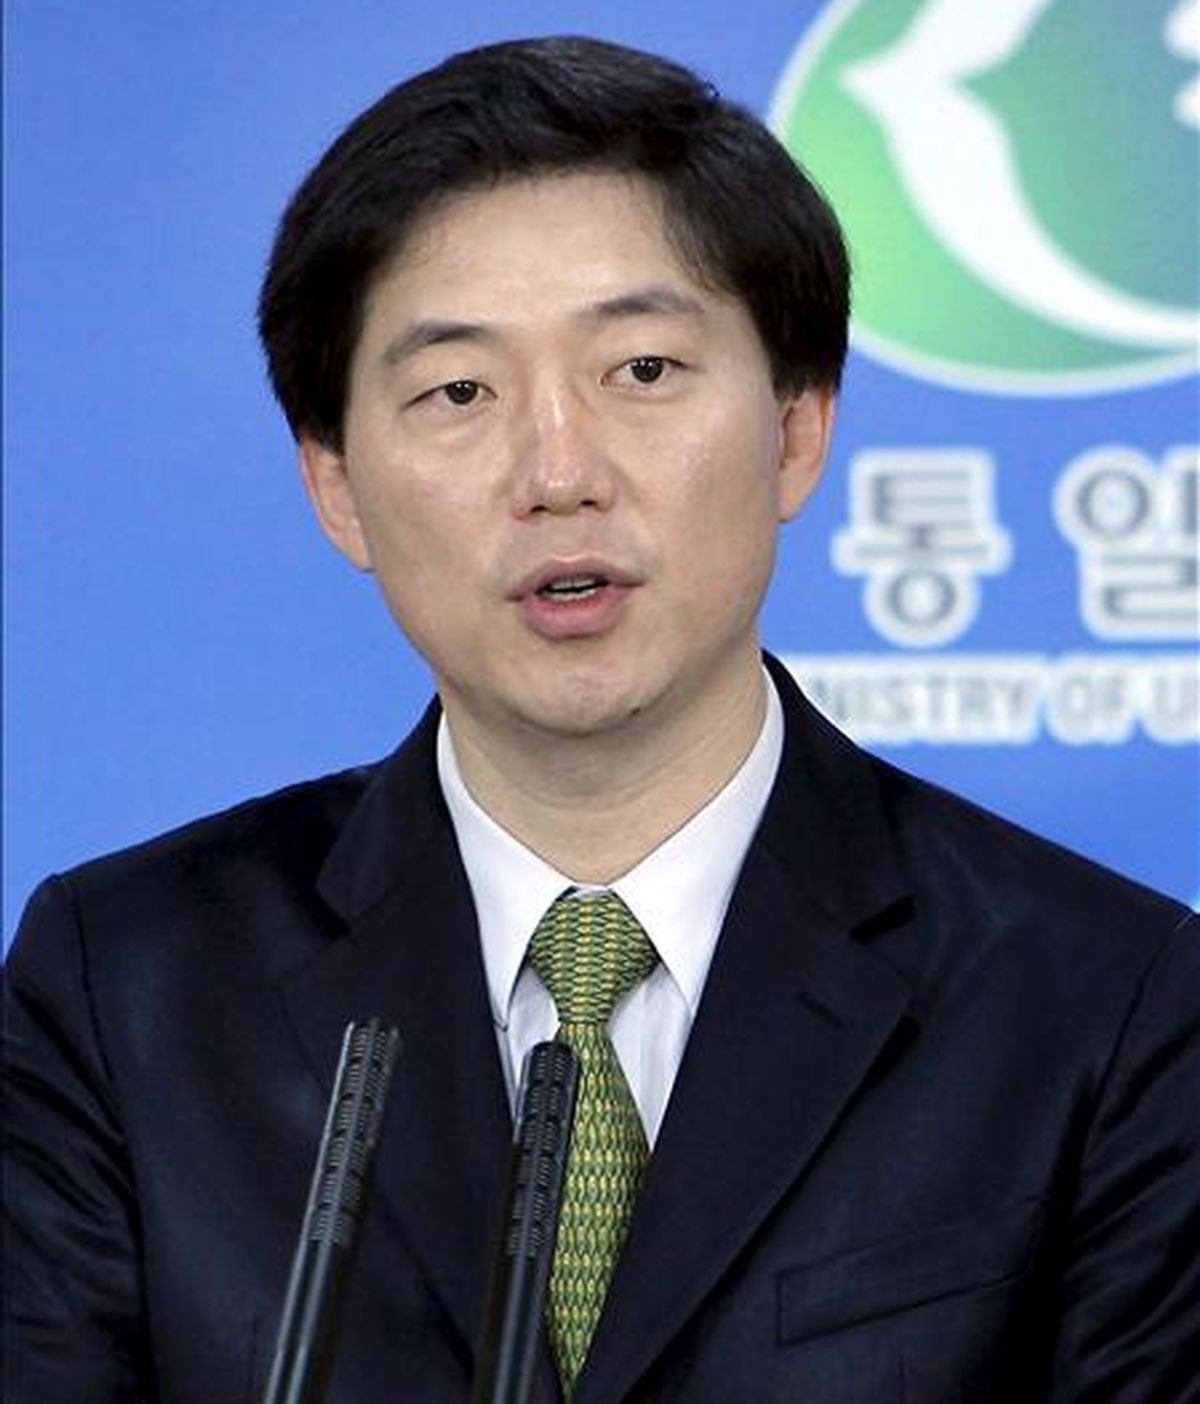 El portavoz del Ministerio de Unificación surcoreano, Chun Hae-sung, comparece en rueda de prensa en Seúl (Corea del Sur). EFE/Archivo